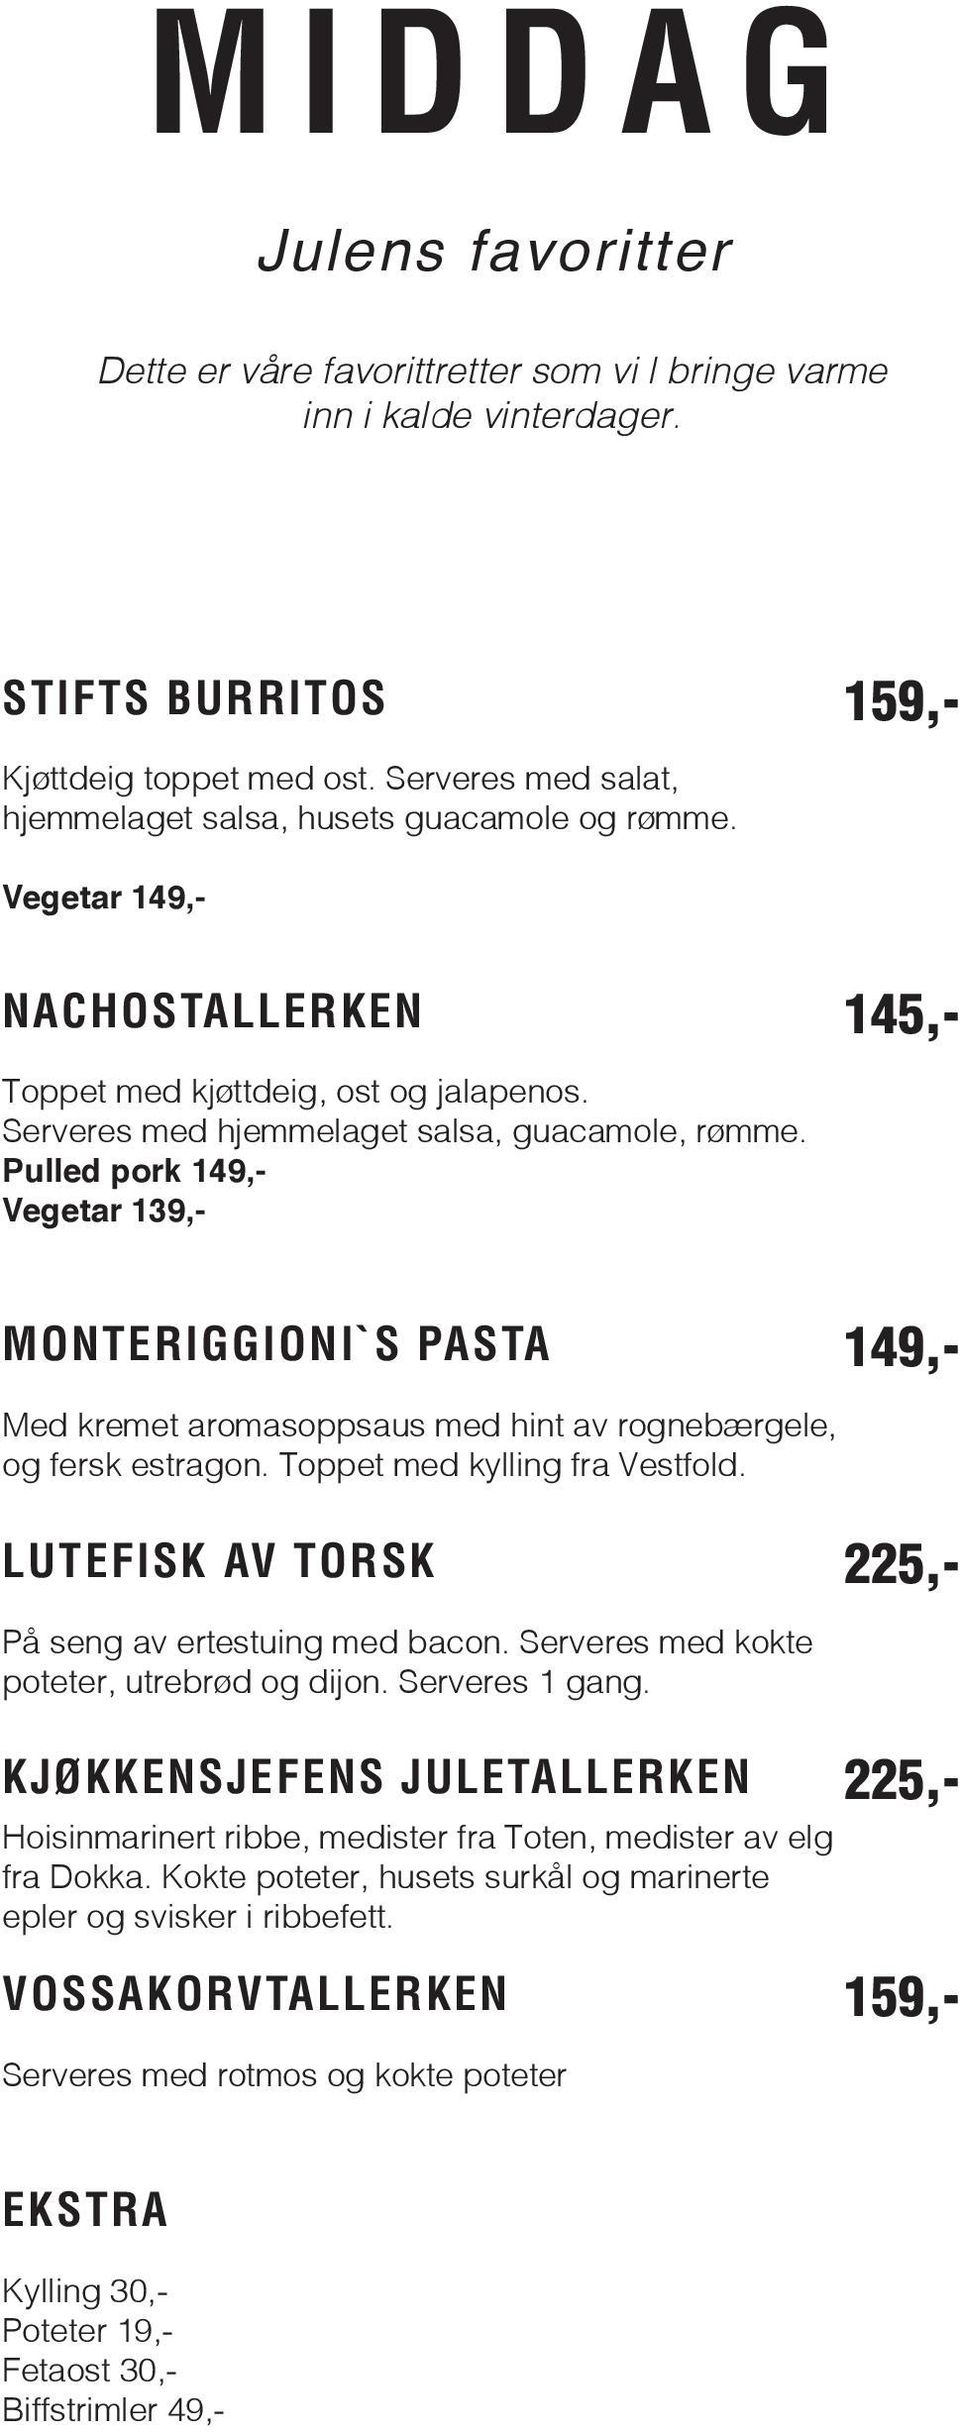 Pulled pork Vegetar 139,- MONTERIGGIONI`S PASTA Med kremet aromasoppsaus med hint av rognebærgele, og fersk estragon. Toppet med kylling fra Vestfold.